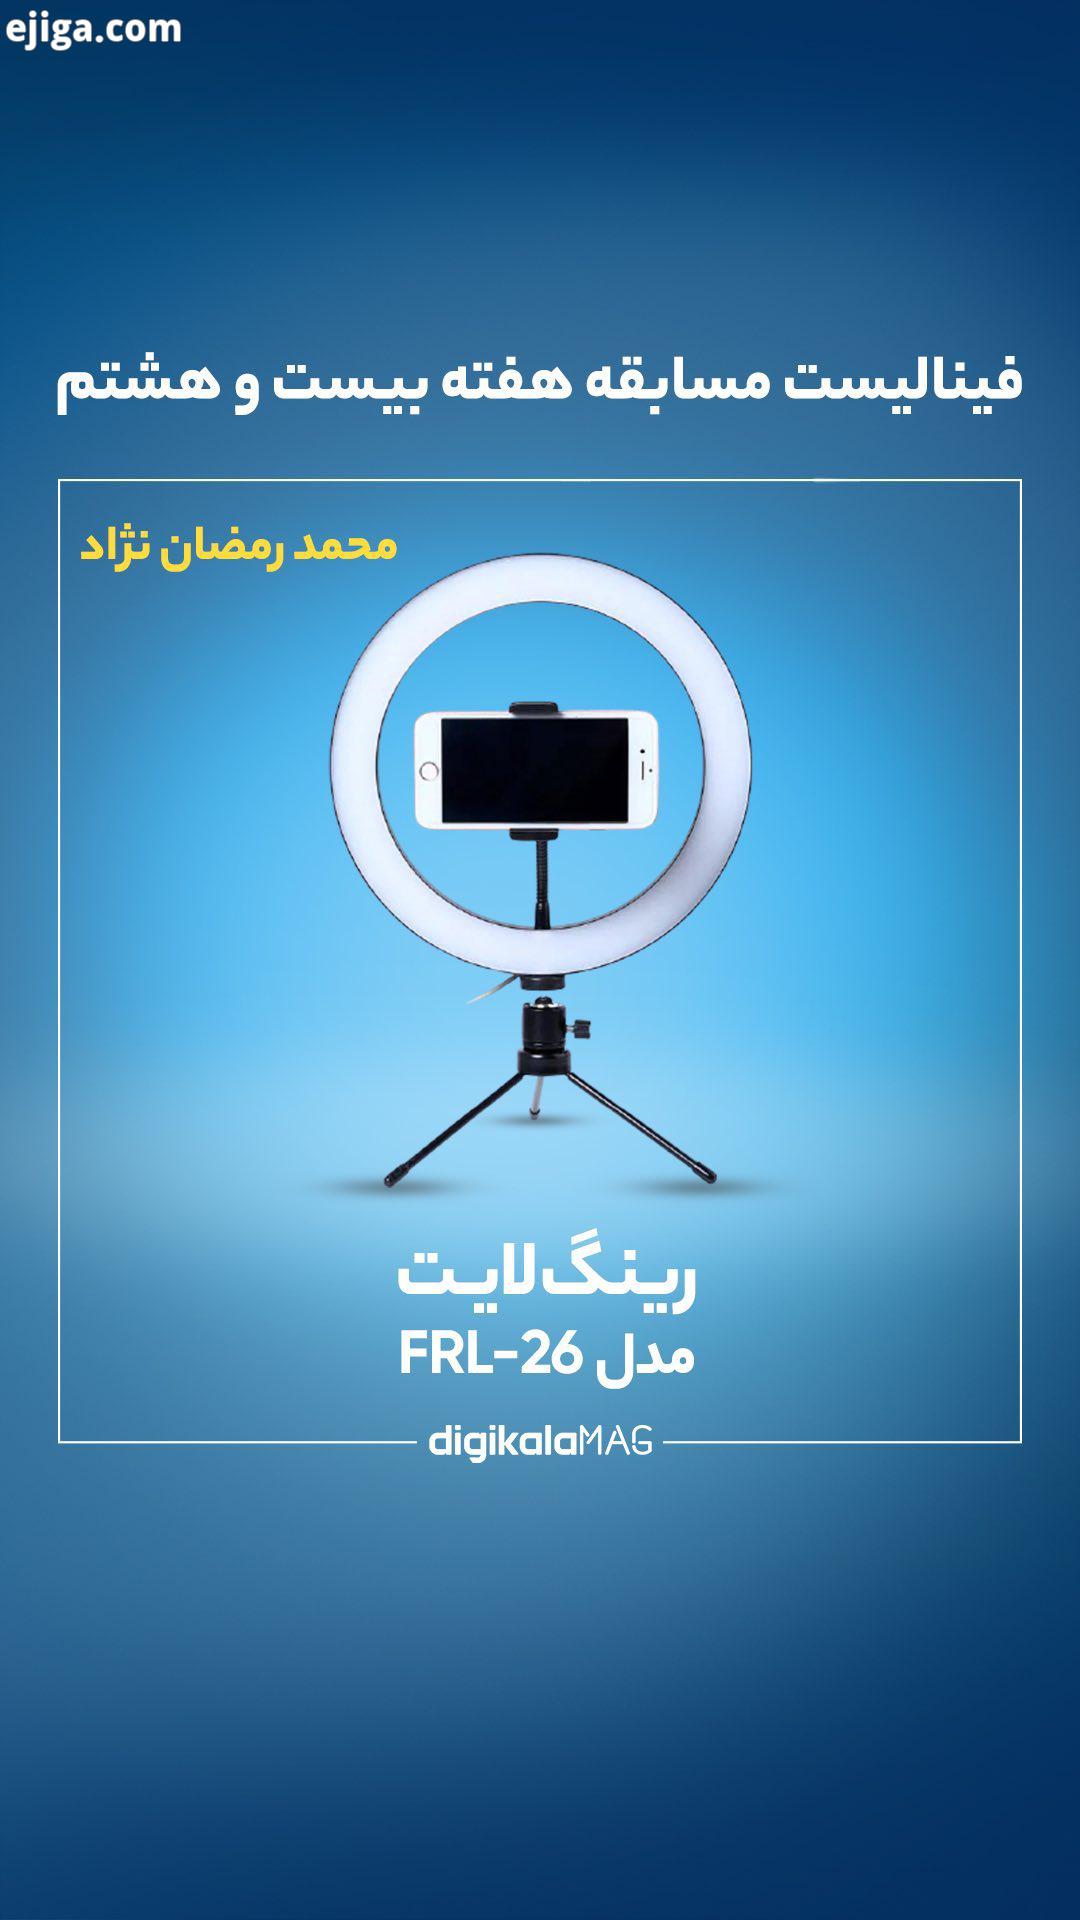 نباکس رینگ لایت مدل FRL 26 فینالیست مسابقه هفته بیست وهشتم نباکس در ۱۰۰ ثانیه محمد رمضان